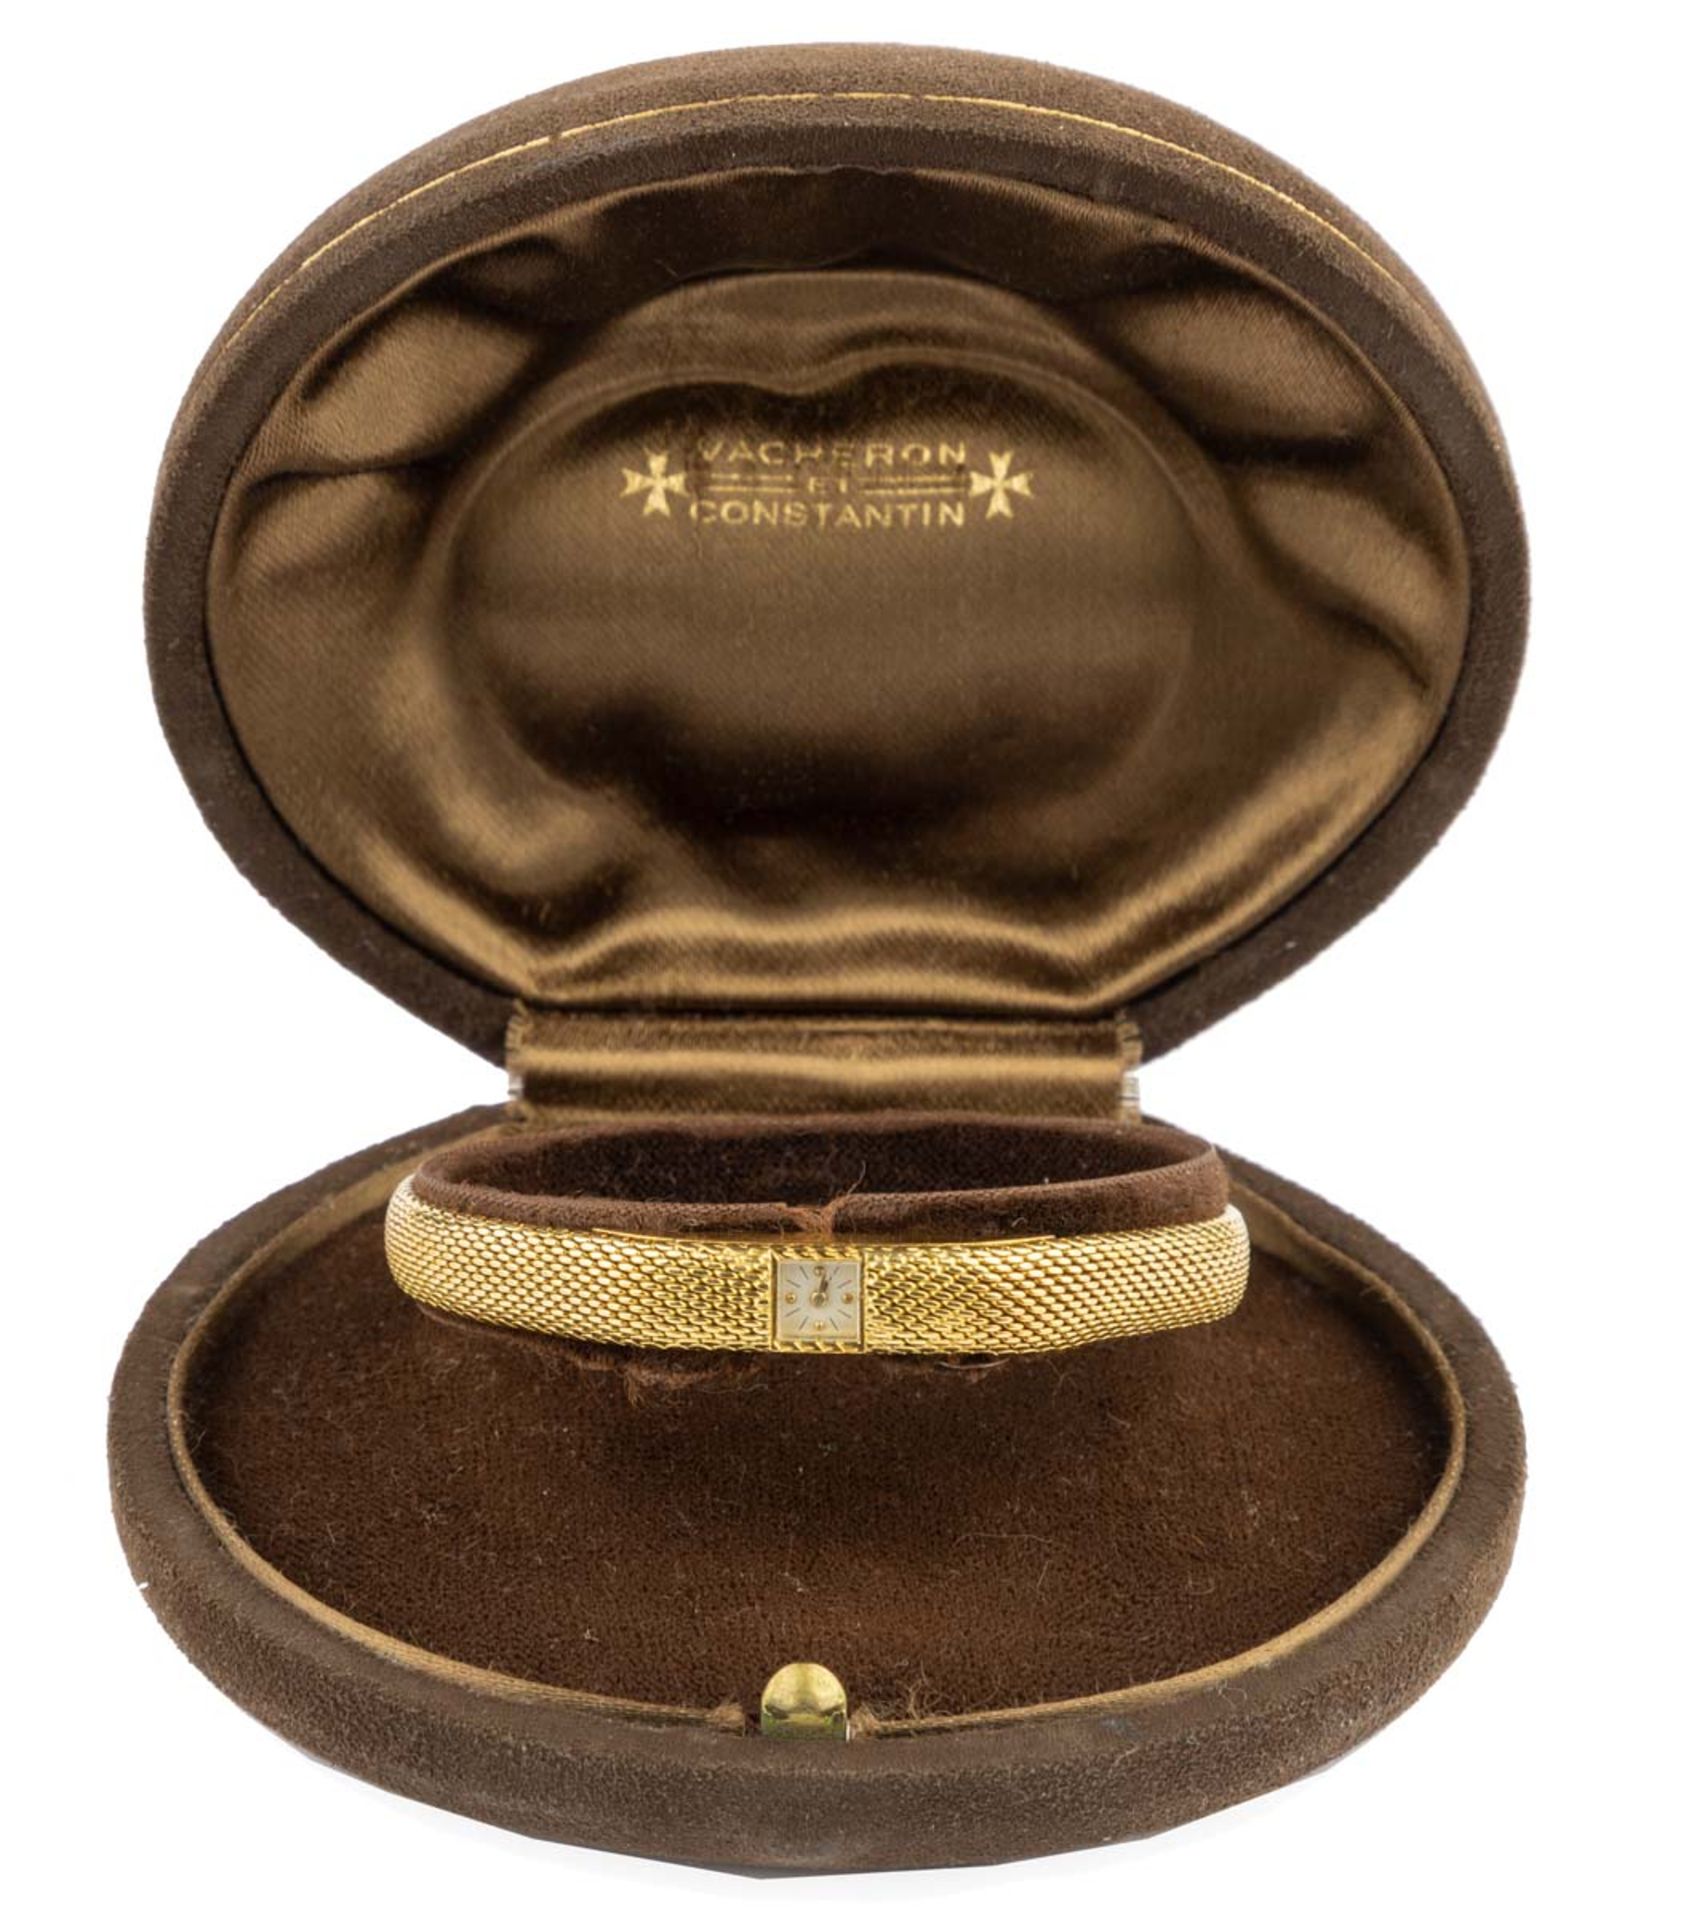 VACHERON CONSTANTINFine montre de dameEn or jaune 18k carats (750), boîtier rectangulaire, petit